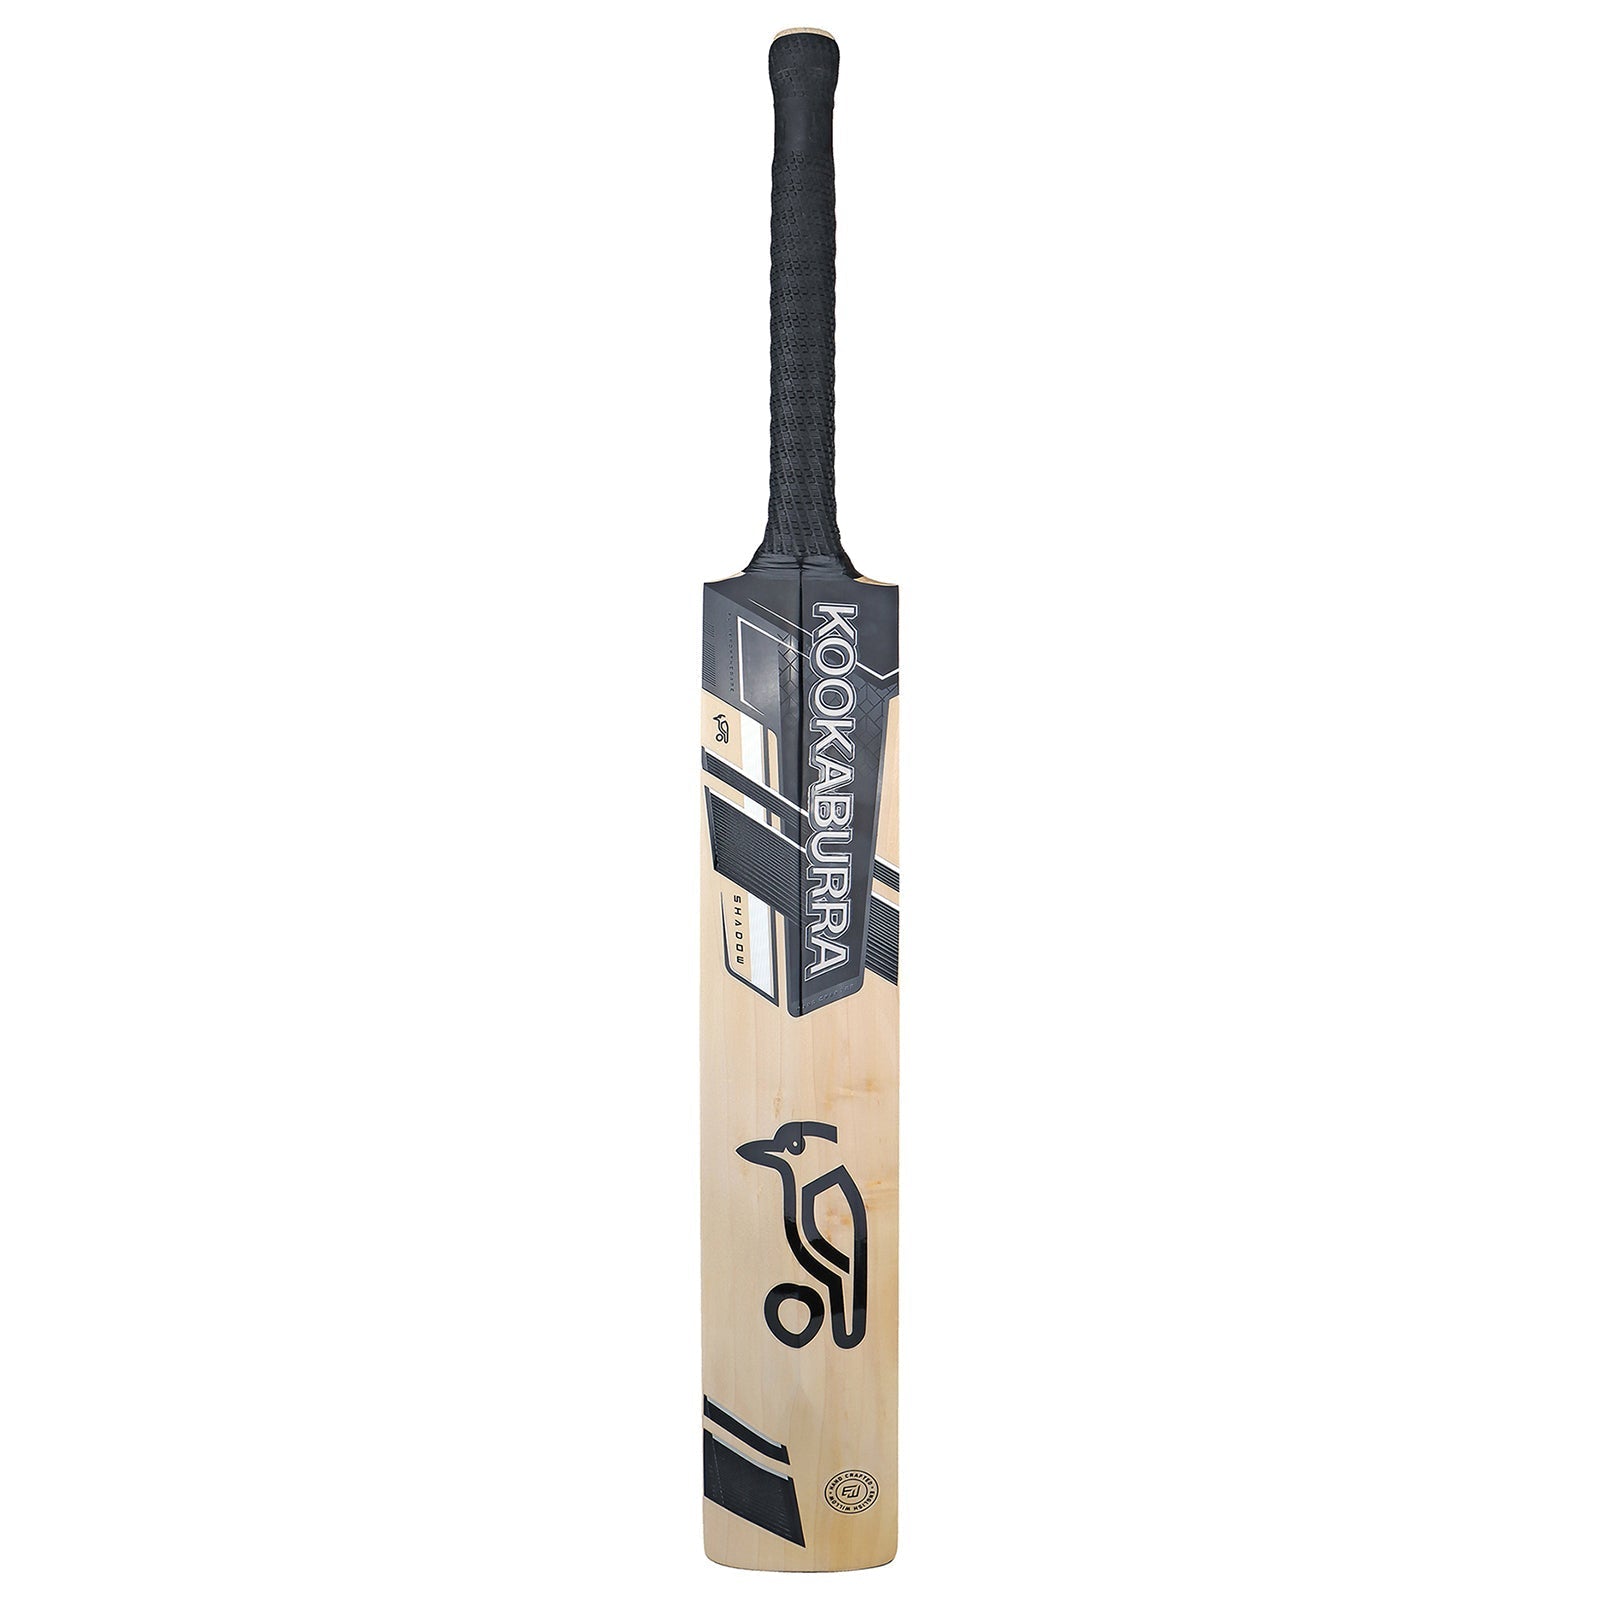 Kookaburra Shadow Pro 5.0 Cricket Bat - Size 6